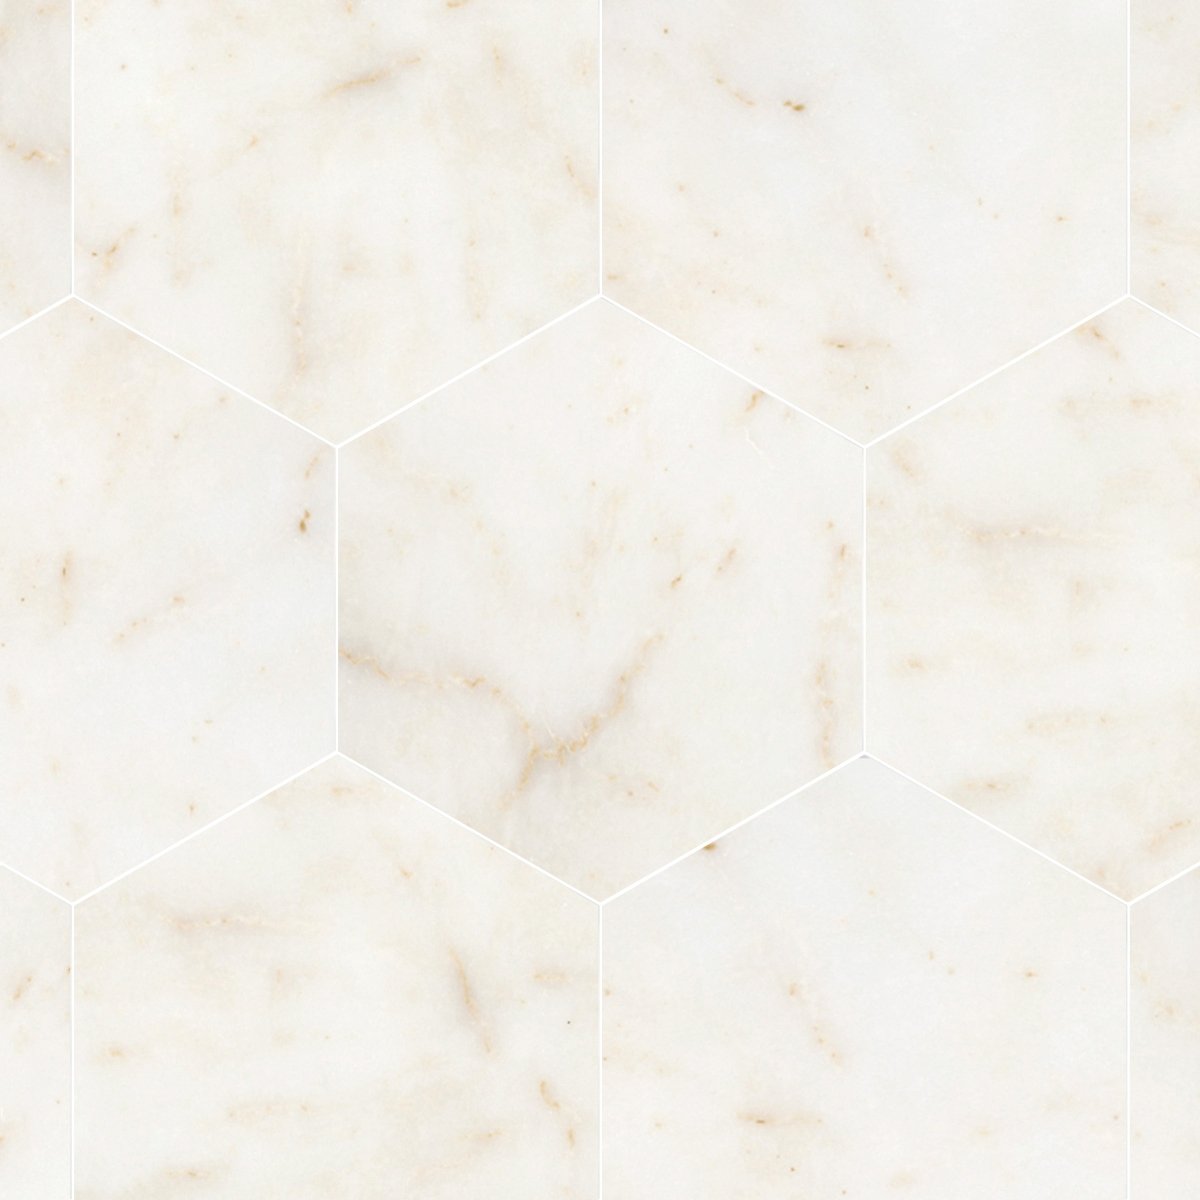 Afyon Sugar Polished Marble Field Tile 10 1/2'' Hexagon - Artsaics 